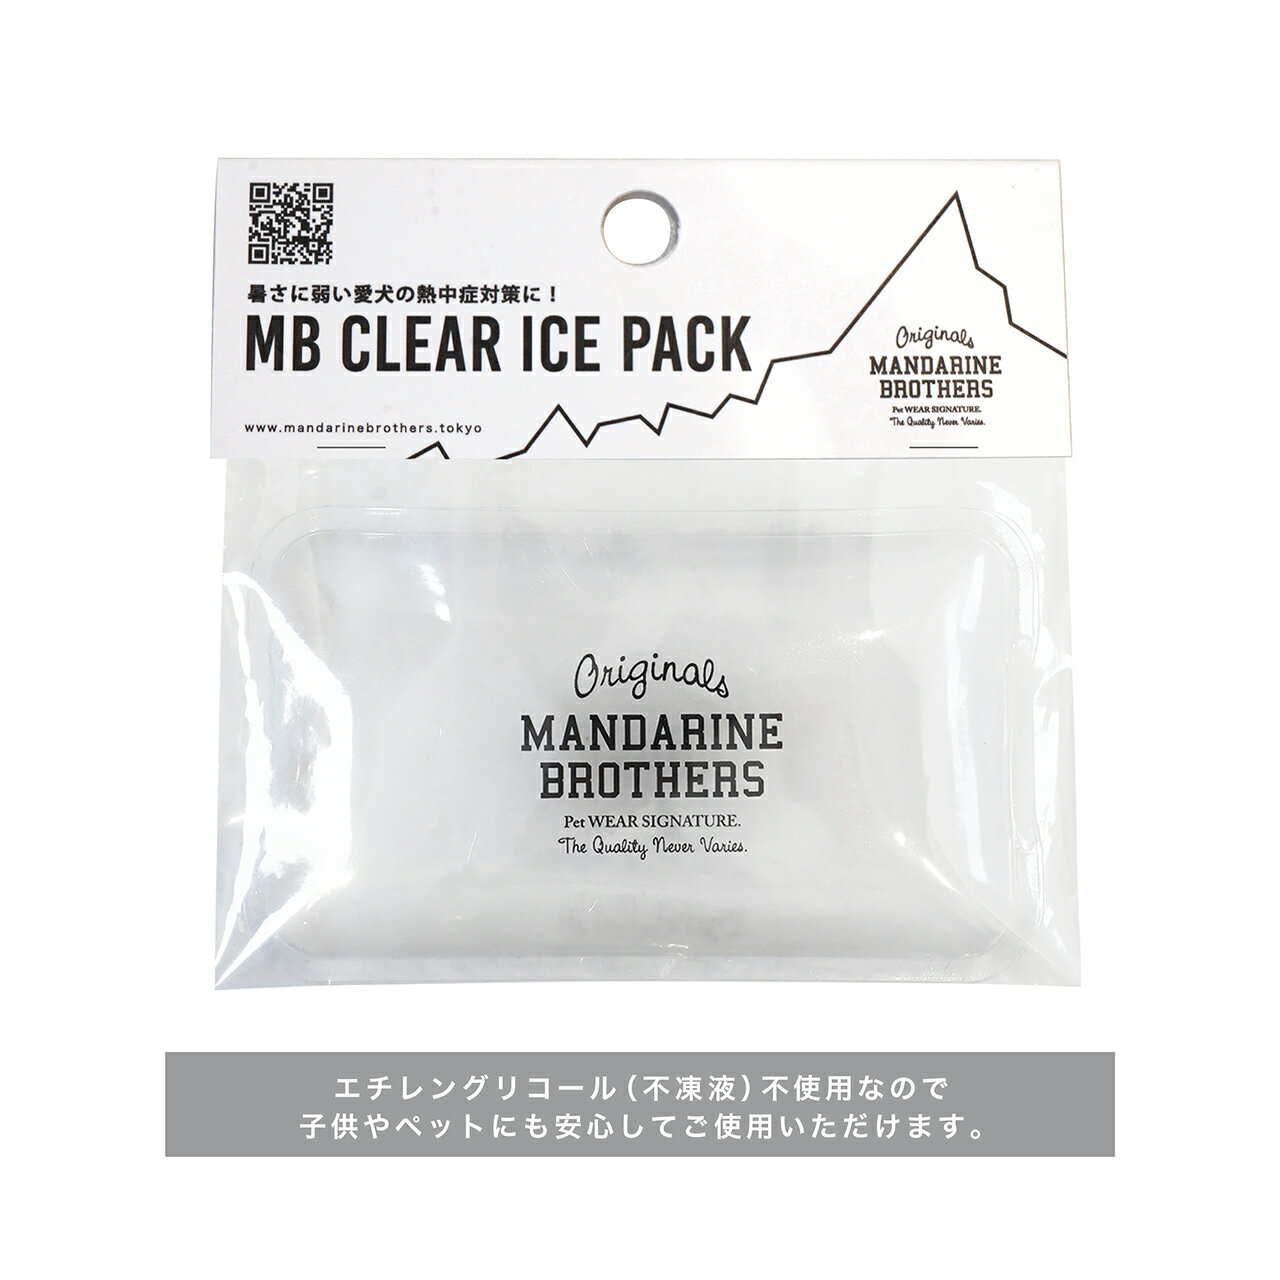 保冷剤 犬 アイスパック ペット 暑さ対策 MANDARINE BROTHERS/MB CLEAR ICE PACK 3